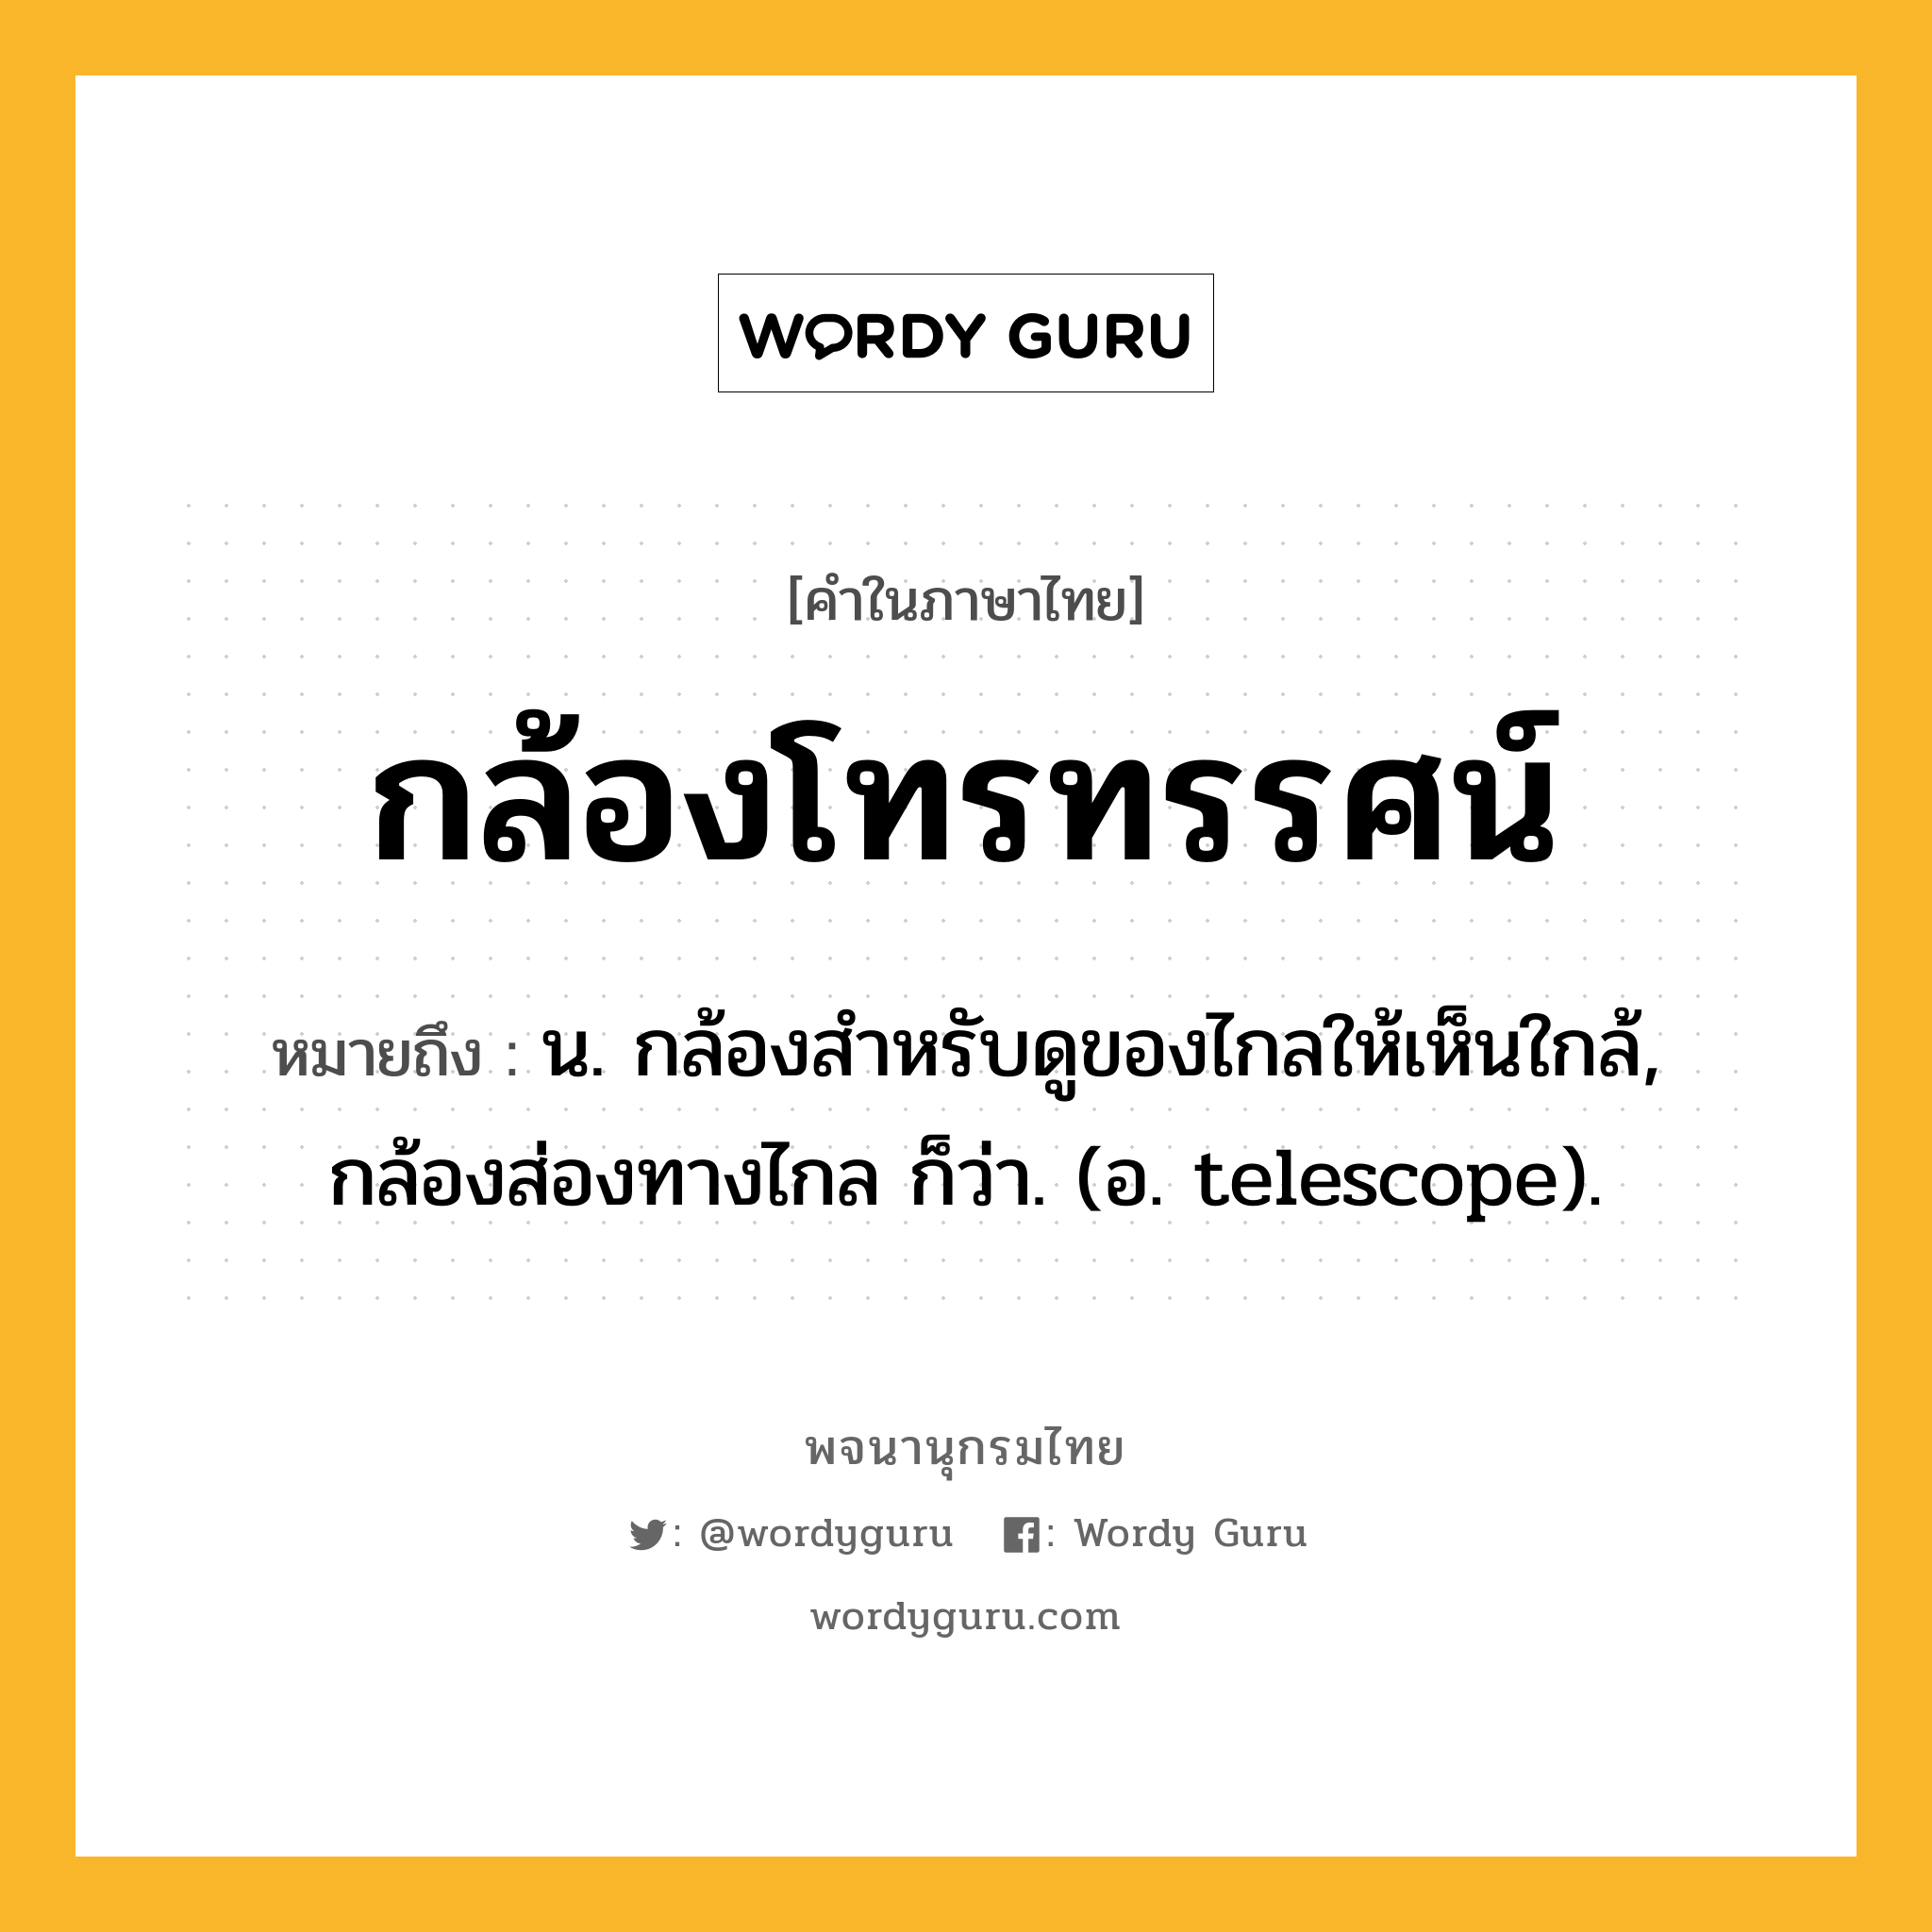 กล้องโทรทรรศน์ หมายถึงอะไร?, คำในภาษาไทย กล้องโทรทรรศน์ หมายถึง น. กล้องสำหรับดูของไกลให้เห็นใกล้, กล้องส่องทางไกล ก็ว่า. (อ. telescope).